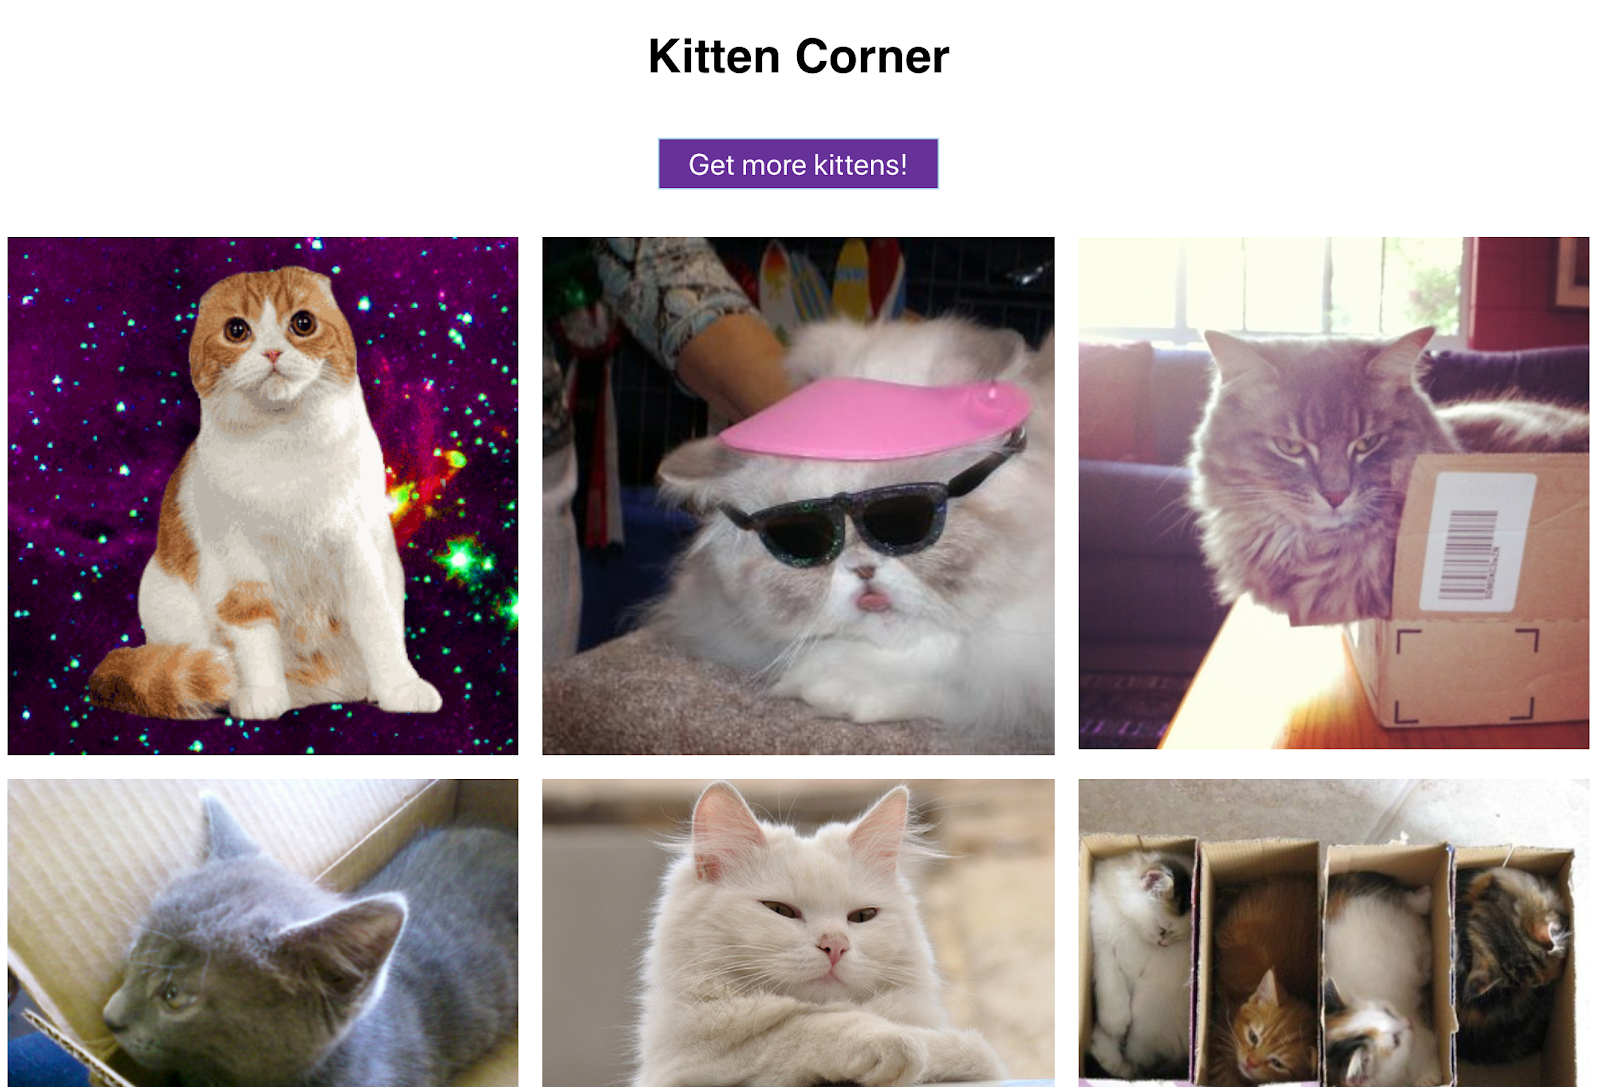 Siatka zdjęć słodkich kociaków i przycisk, żeby pokazać ich więcej – czy to nie najlepsze z możliwych zastosowań aplikacji internetowej?